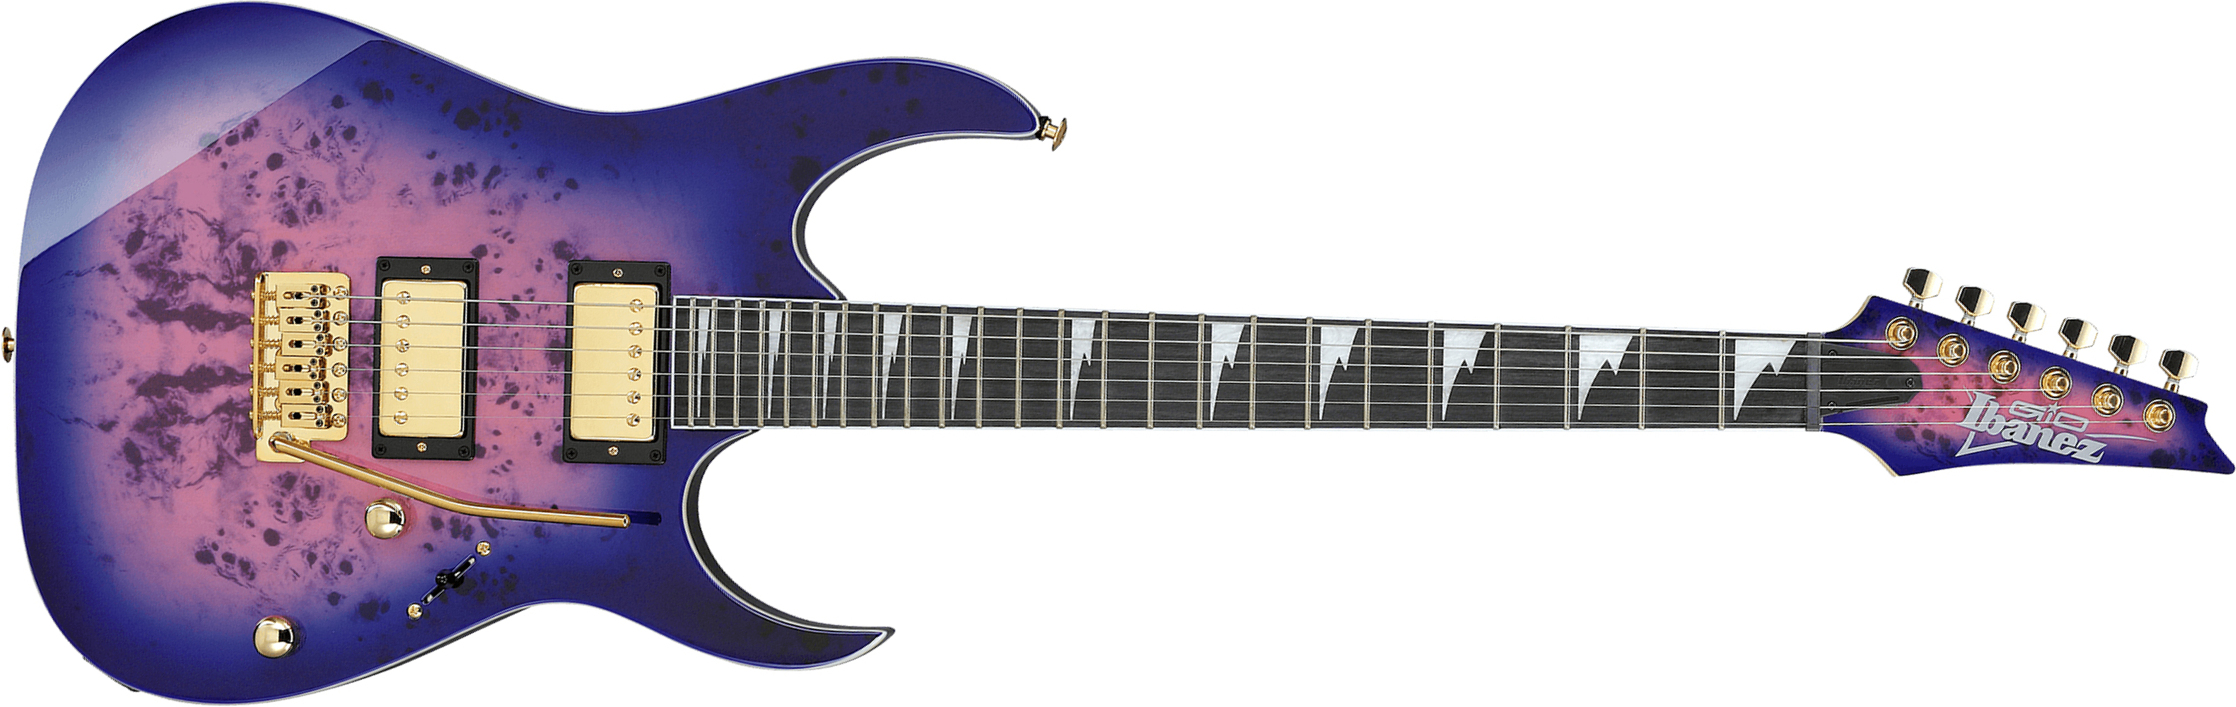 Ibanez Grg220pa Rlb Gio 2h Trem Pur - Royal Purple Burst - Guitarra eléctrica con forma de str. - Main picture